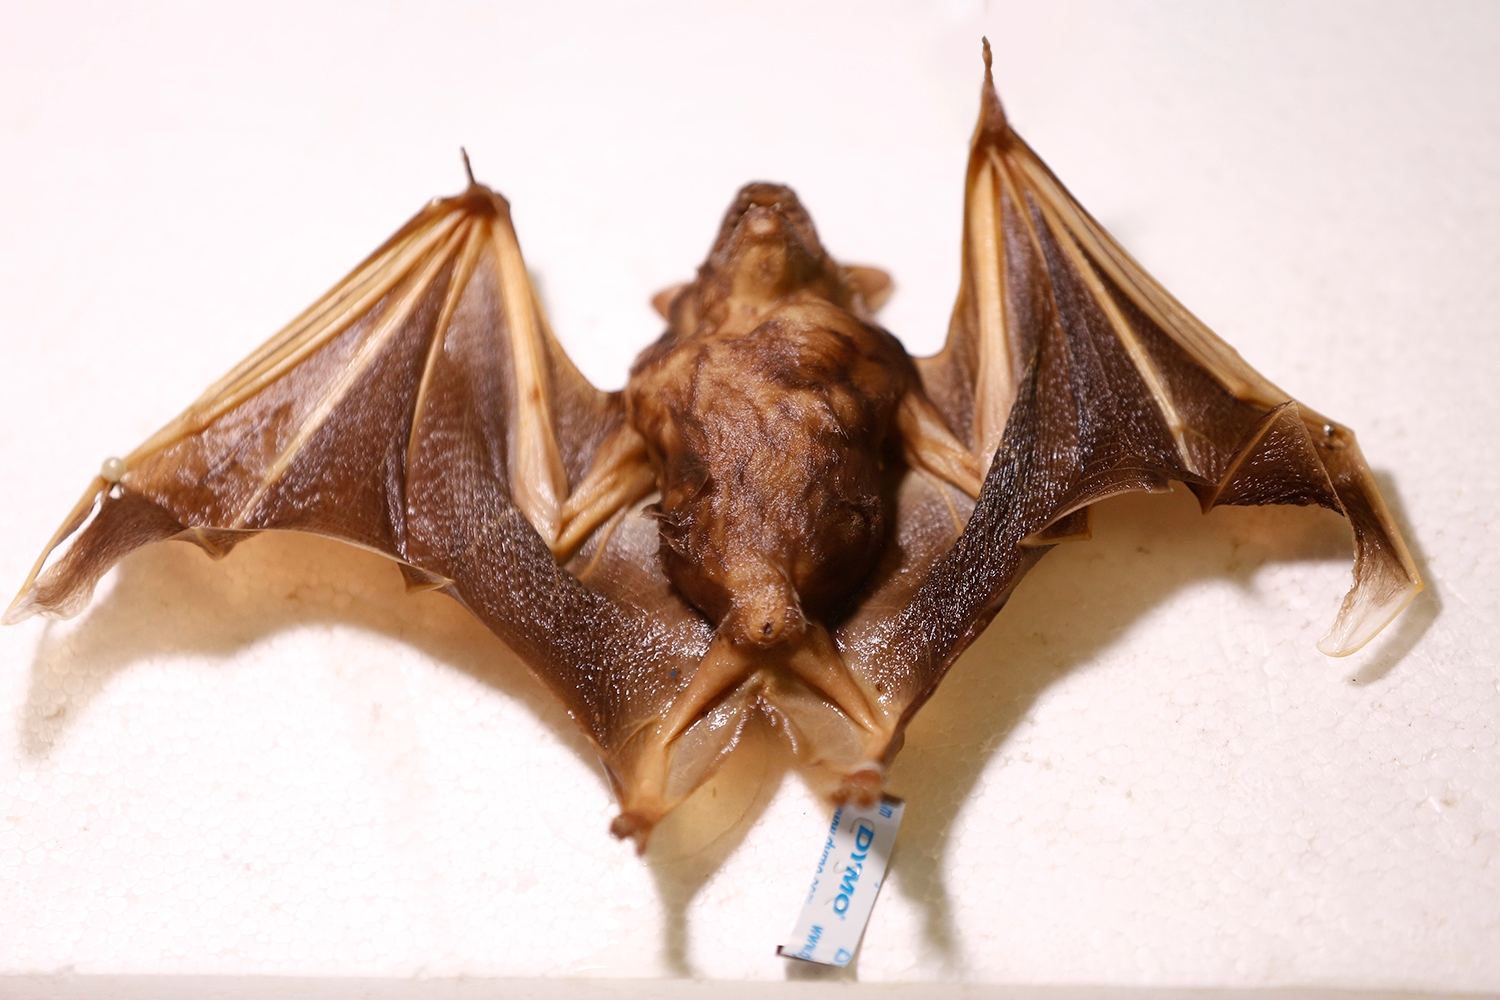 Morcegos são animais pertencentes à ordem Chiroptera. Fotos: Adilson Andrade/Ascom UFS